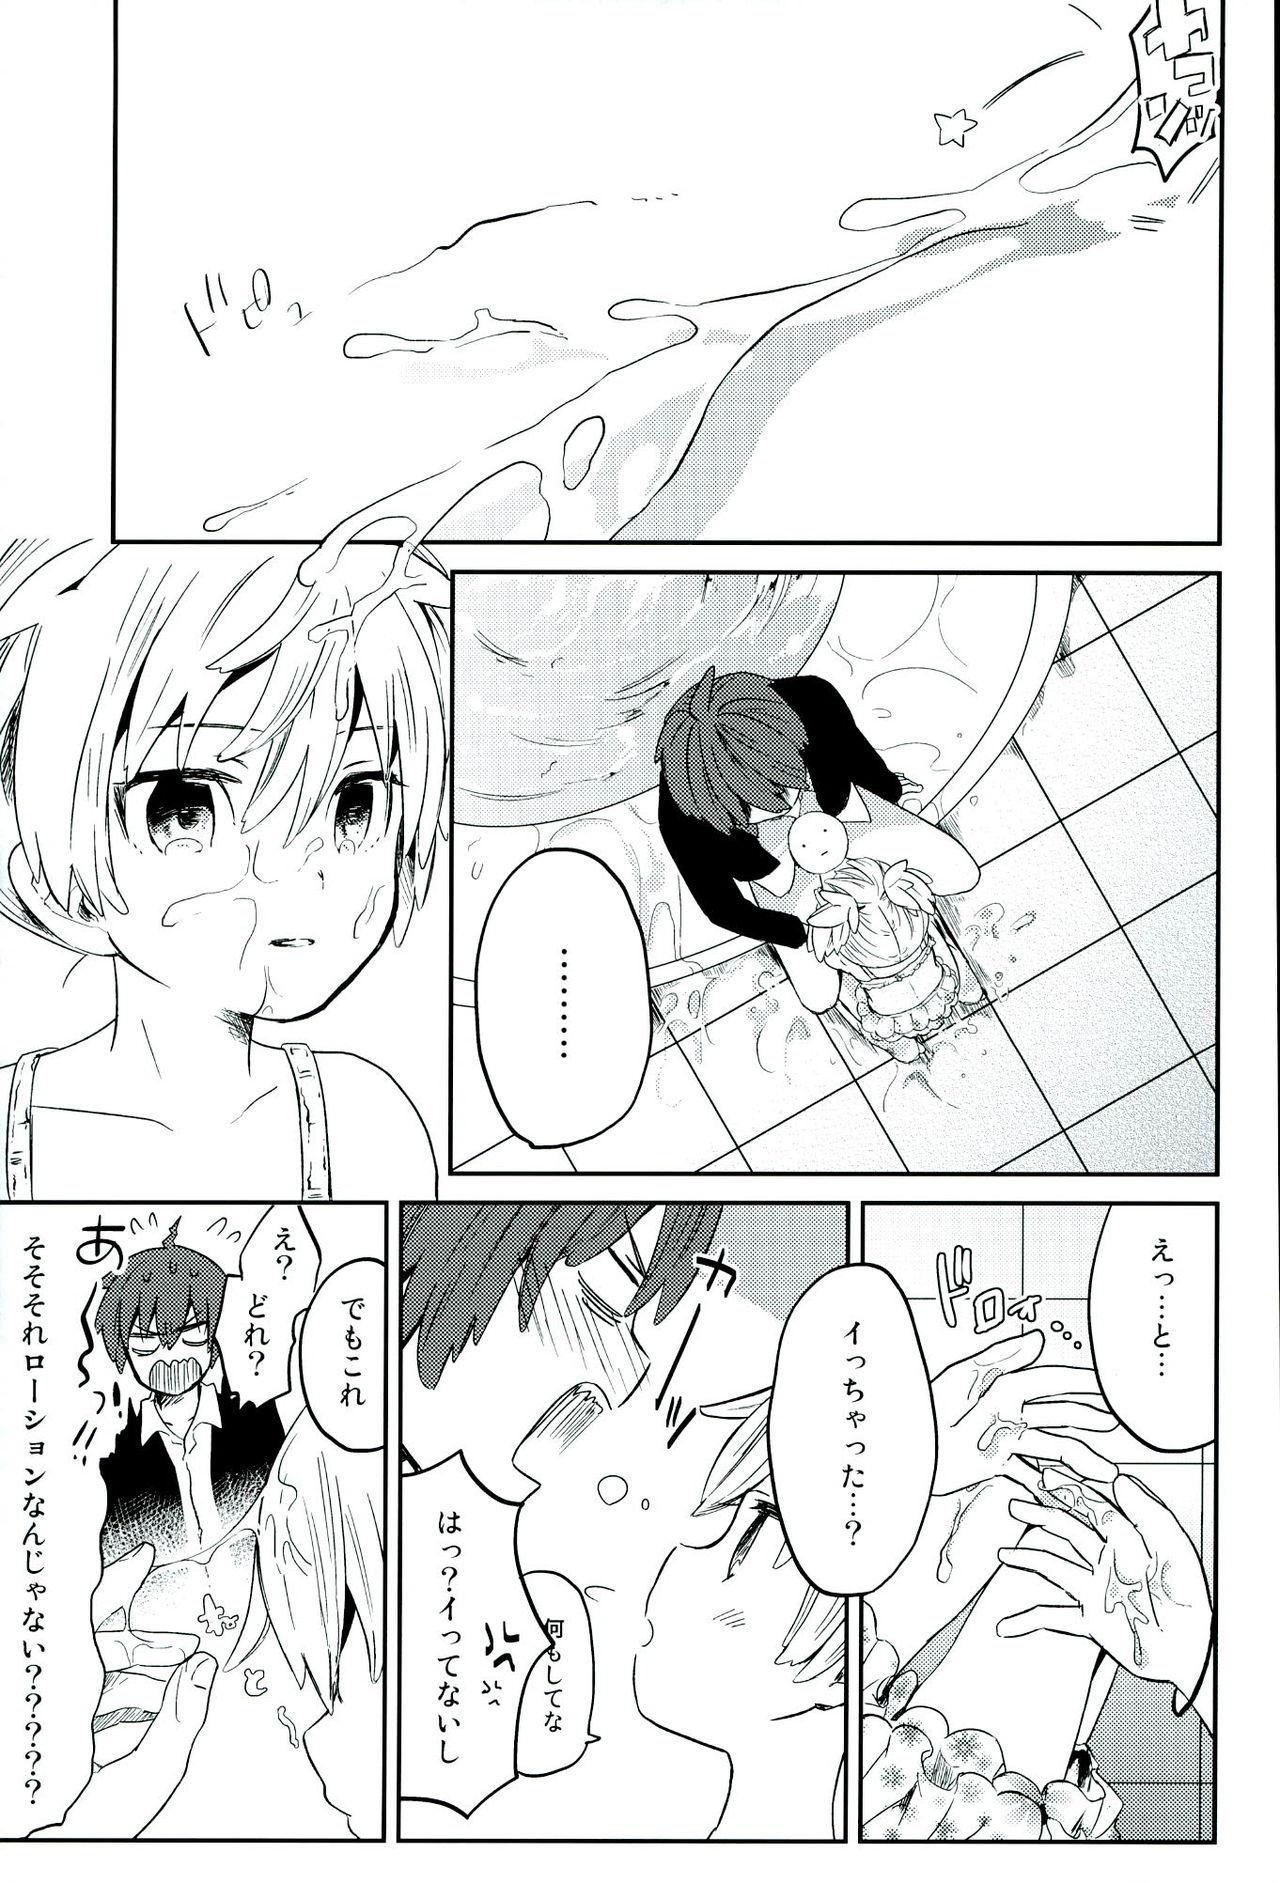 Pissing Chuu 2 Han wa 3 Kosuri Han!? - Ansatsu kyoushitsu Roundass - Page 11